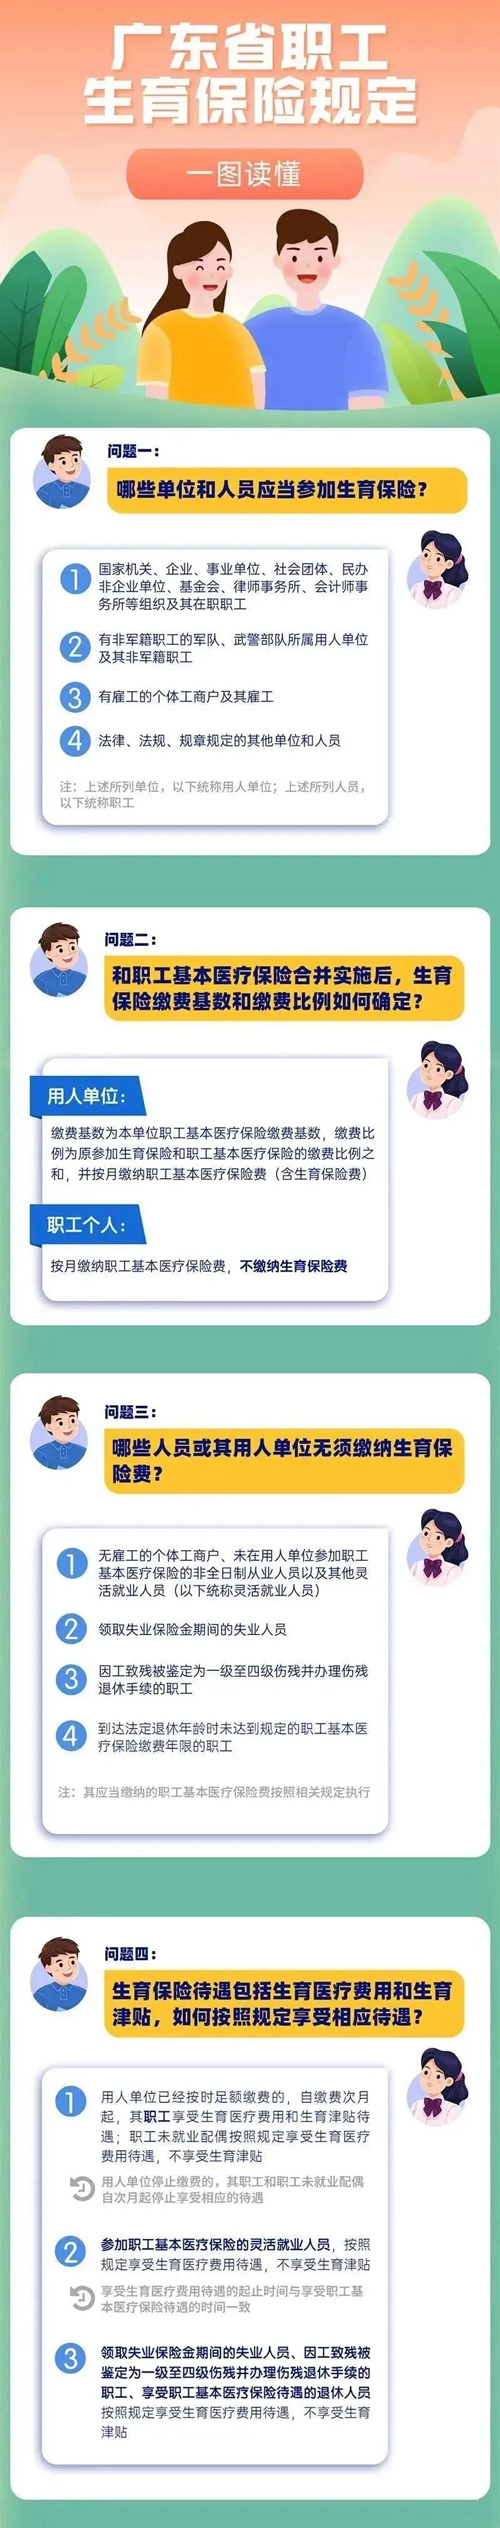 广东职工生育保险规定新规将于10月1日起施行 职工产假天数有变化